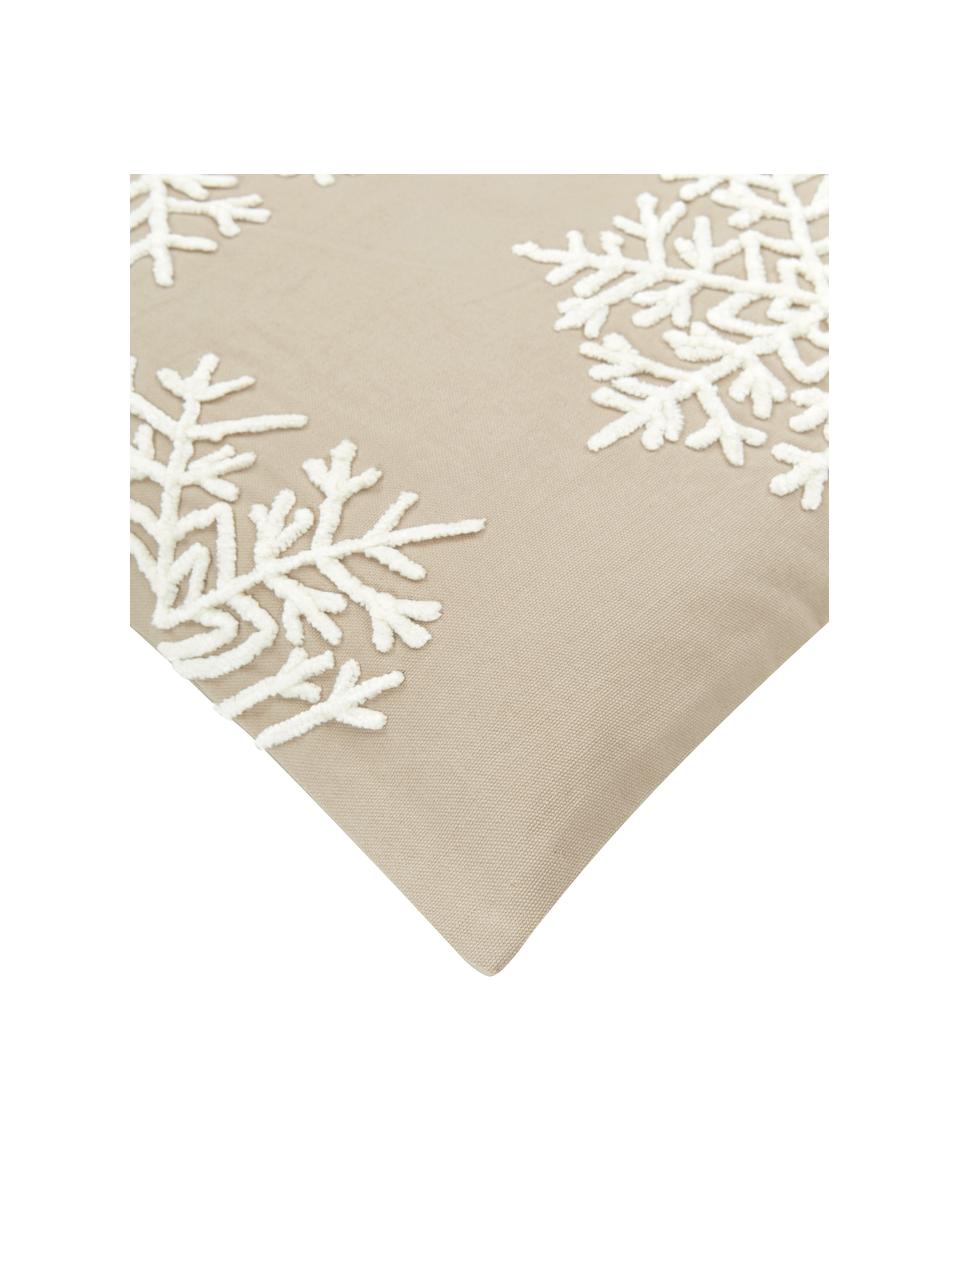 Geborduurde kussenhoes Snowflake in taupe, 100% katoen, Beige, 45 x 45 cm